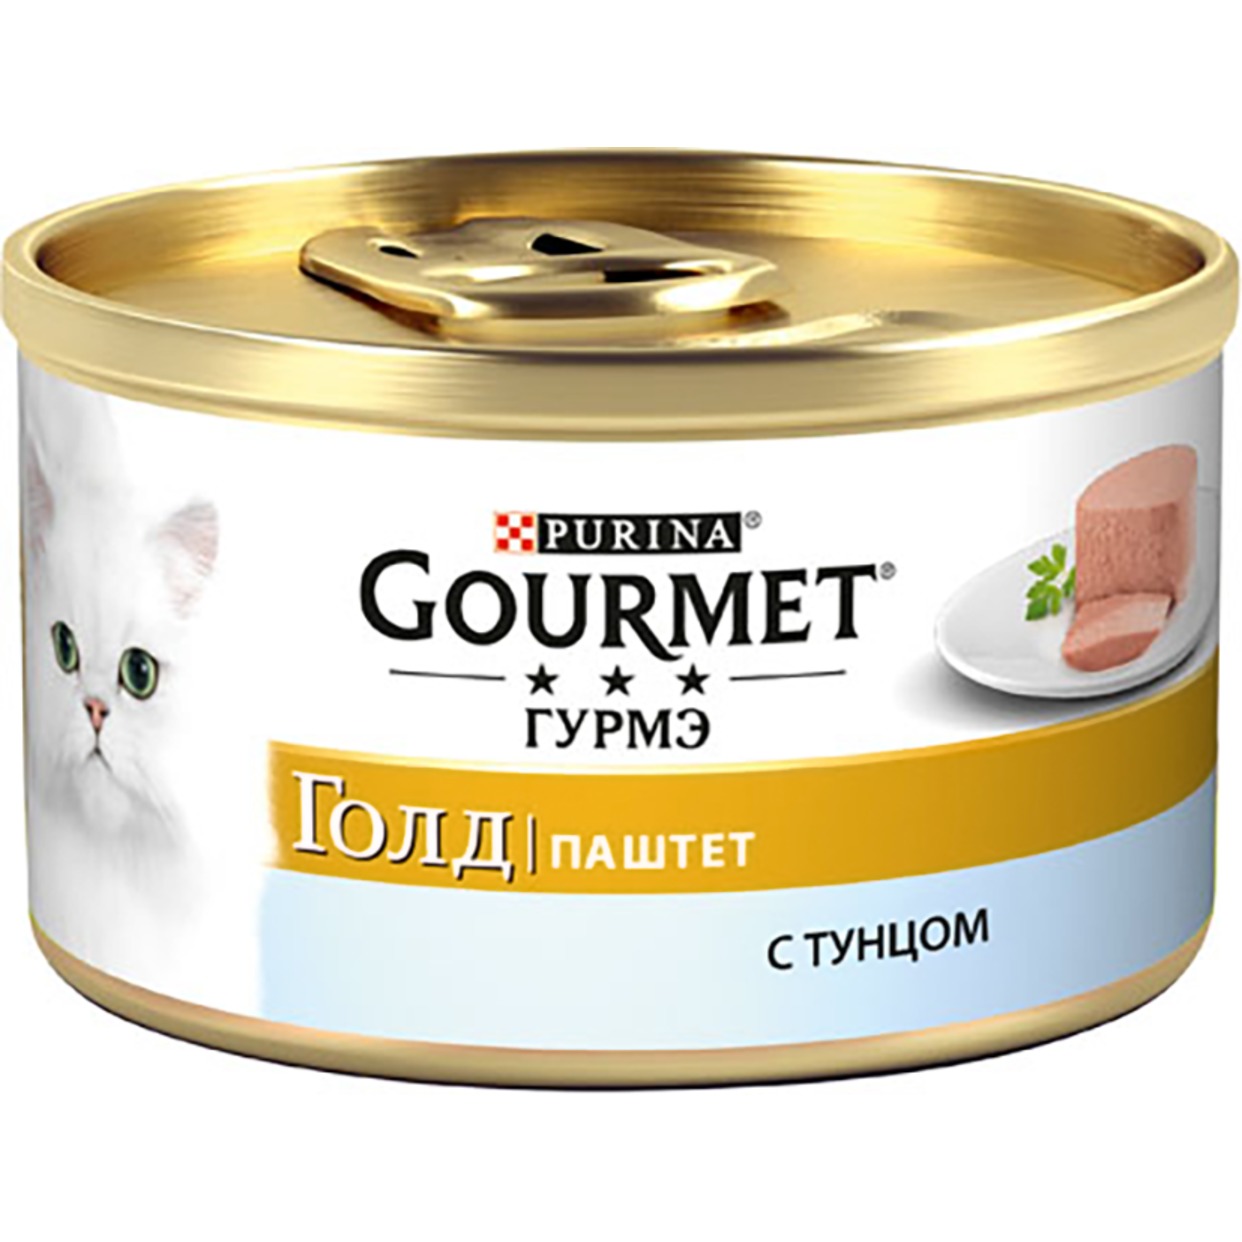 Корм Gourmet Gold для кошек паштет с тунцом 85г по акции в Пятерочке